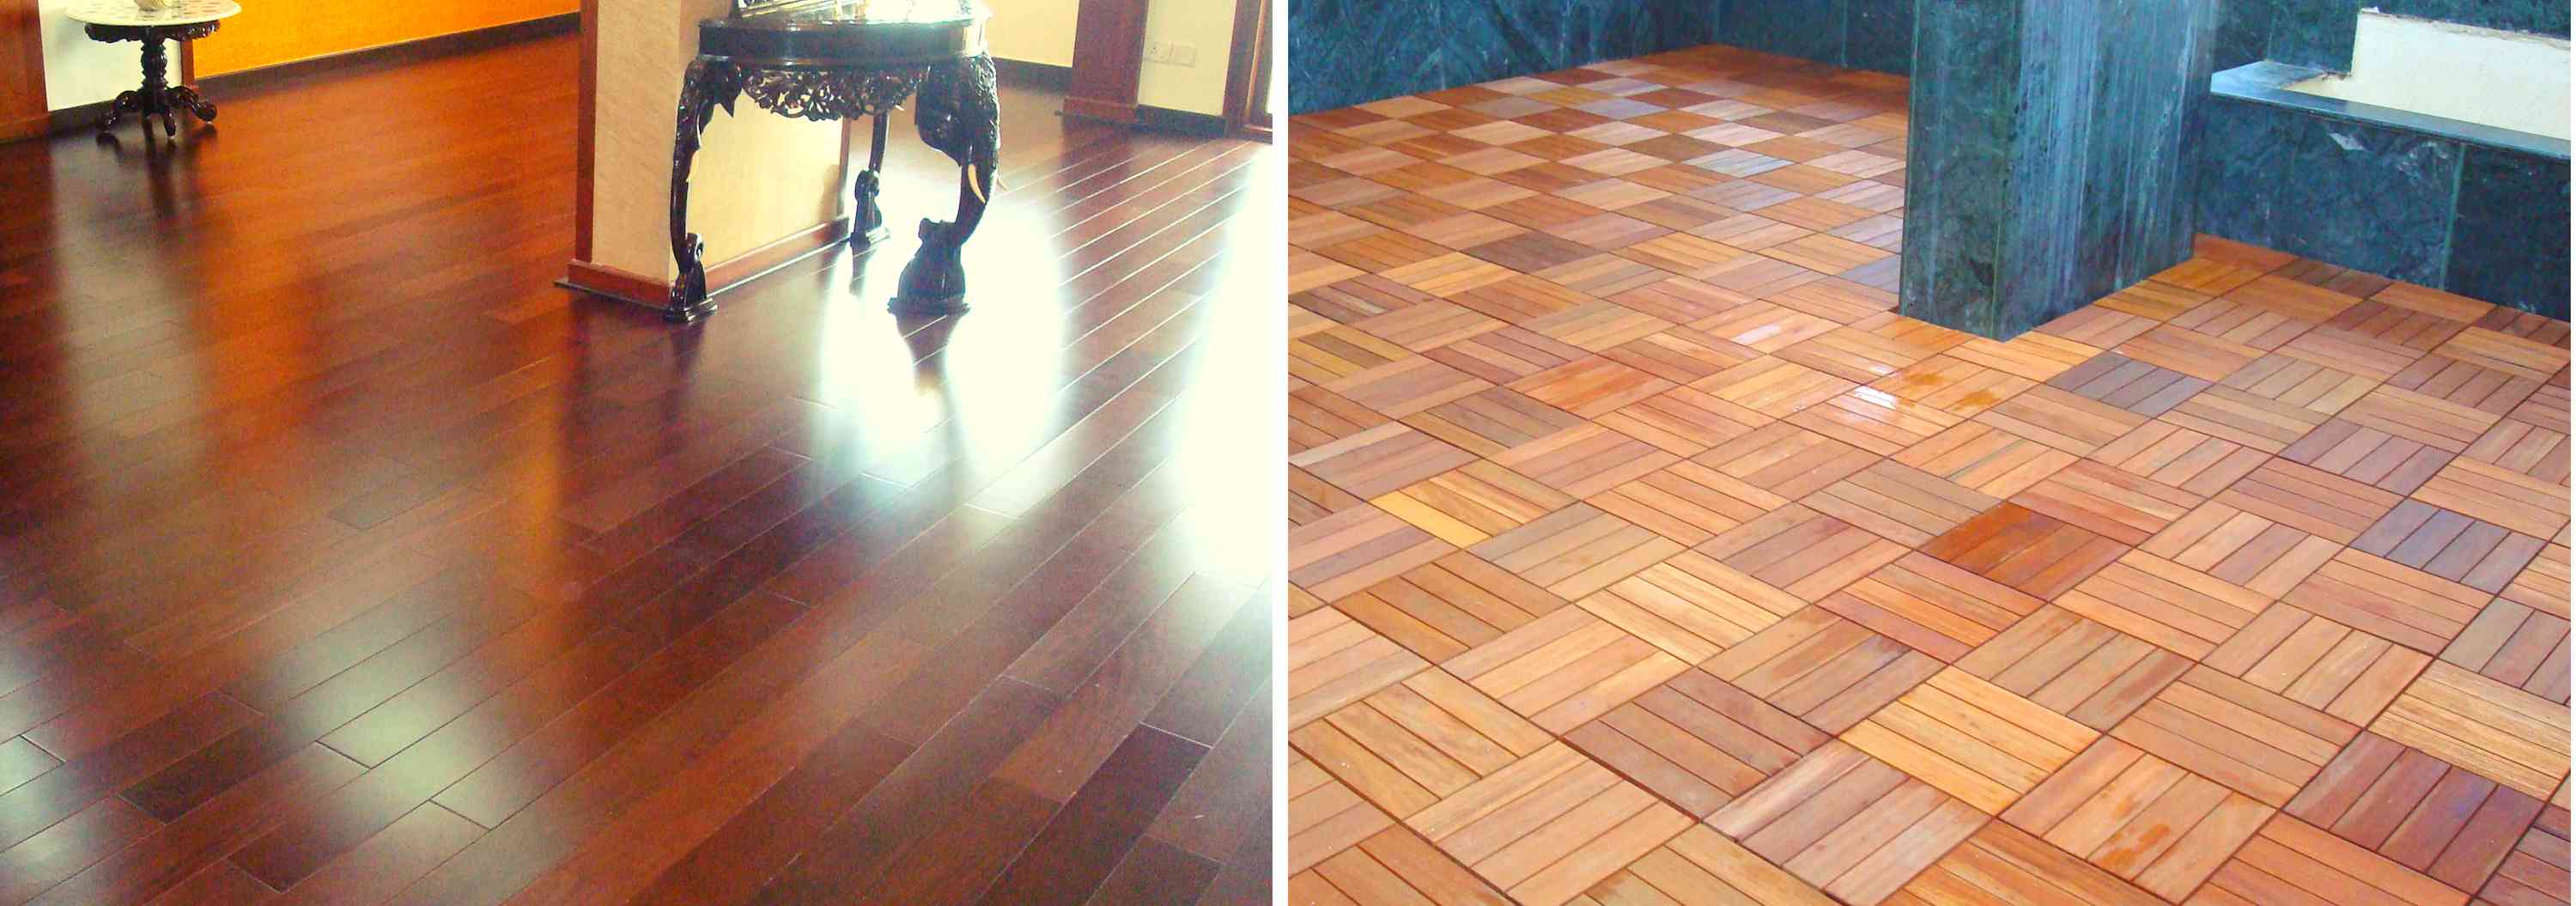 Wooden flooring bangalore, Mr. Kamath Residence flooring, wooden flooring